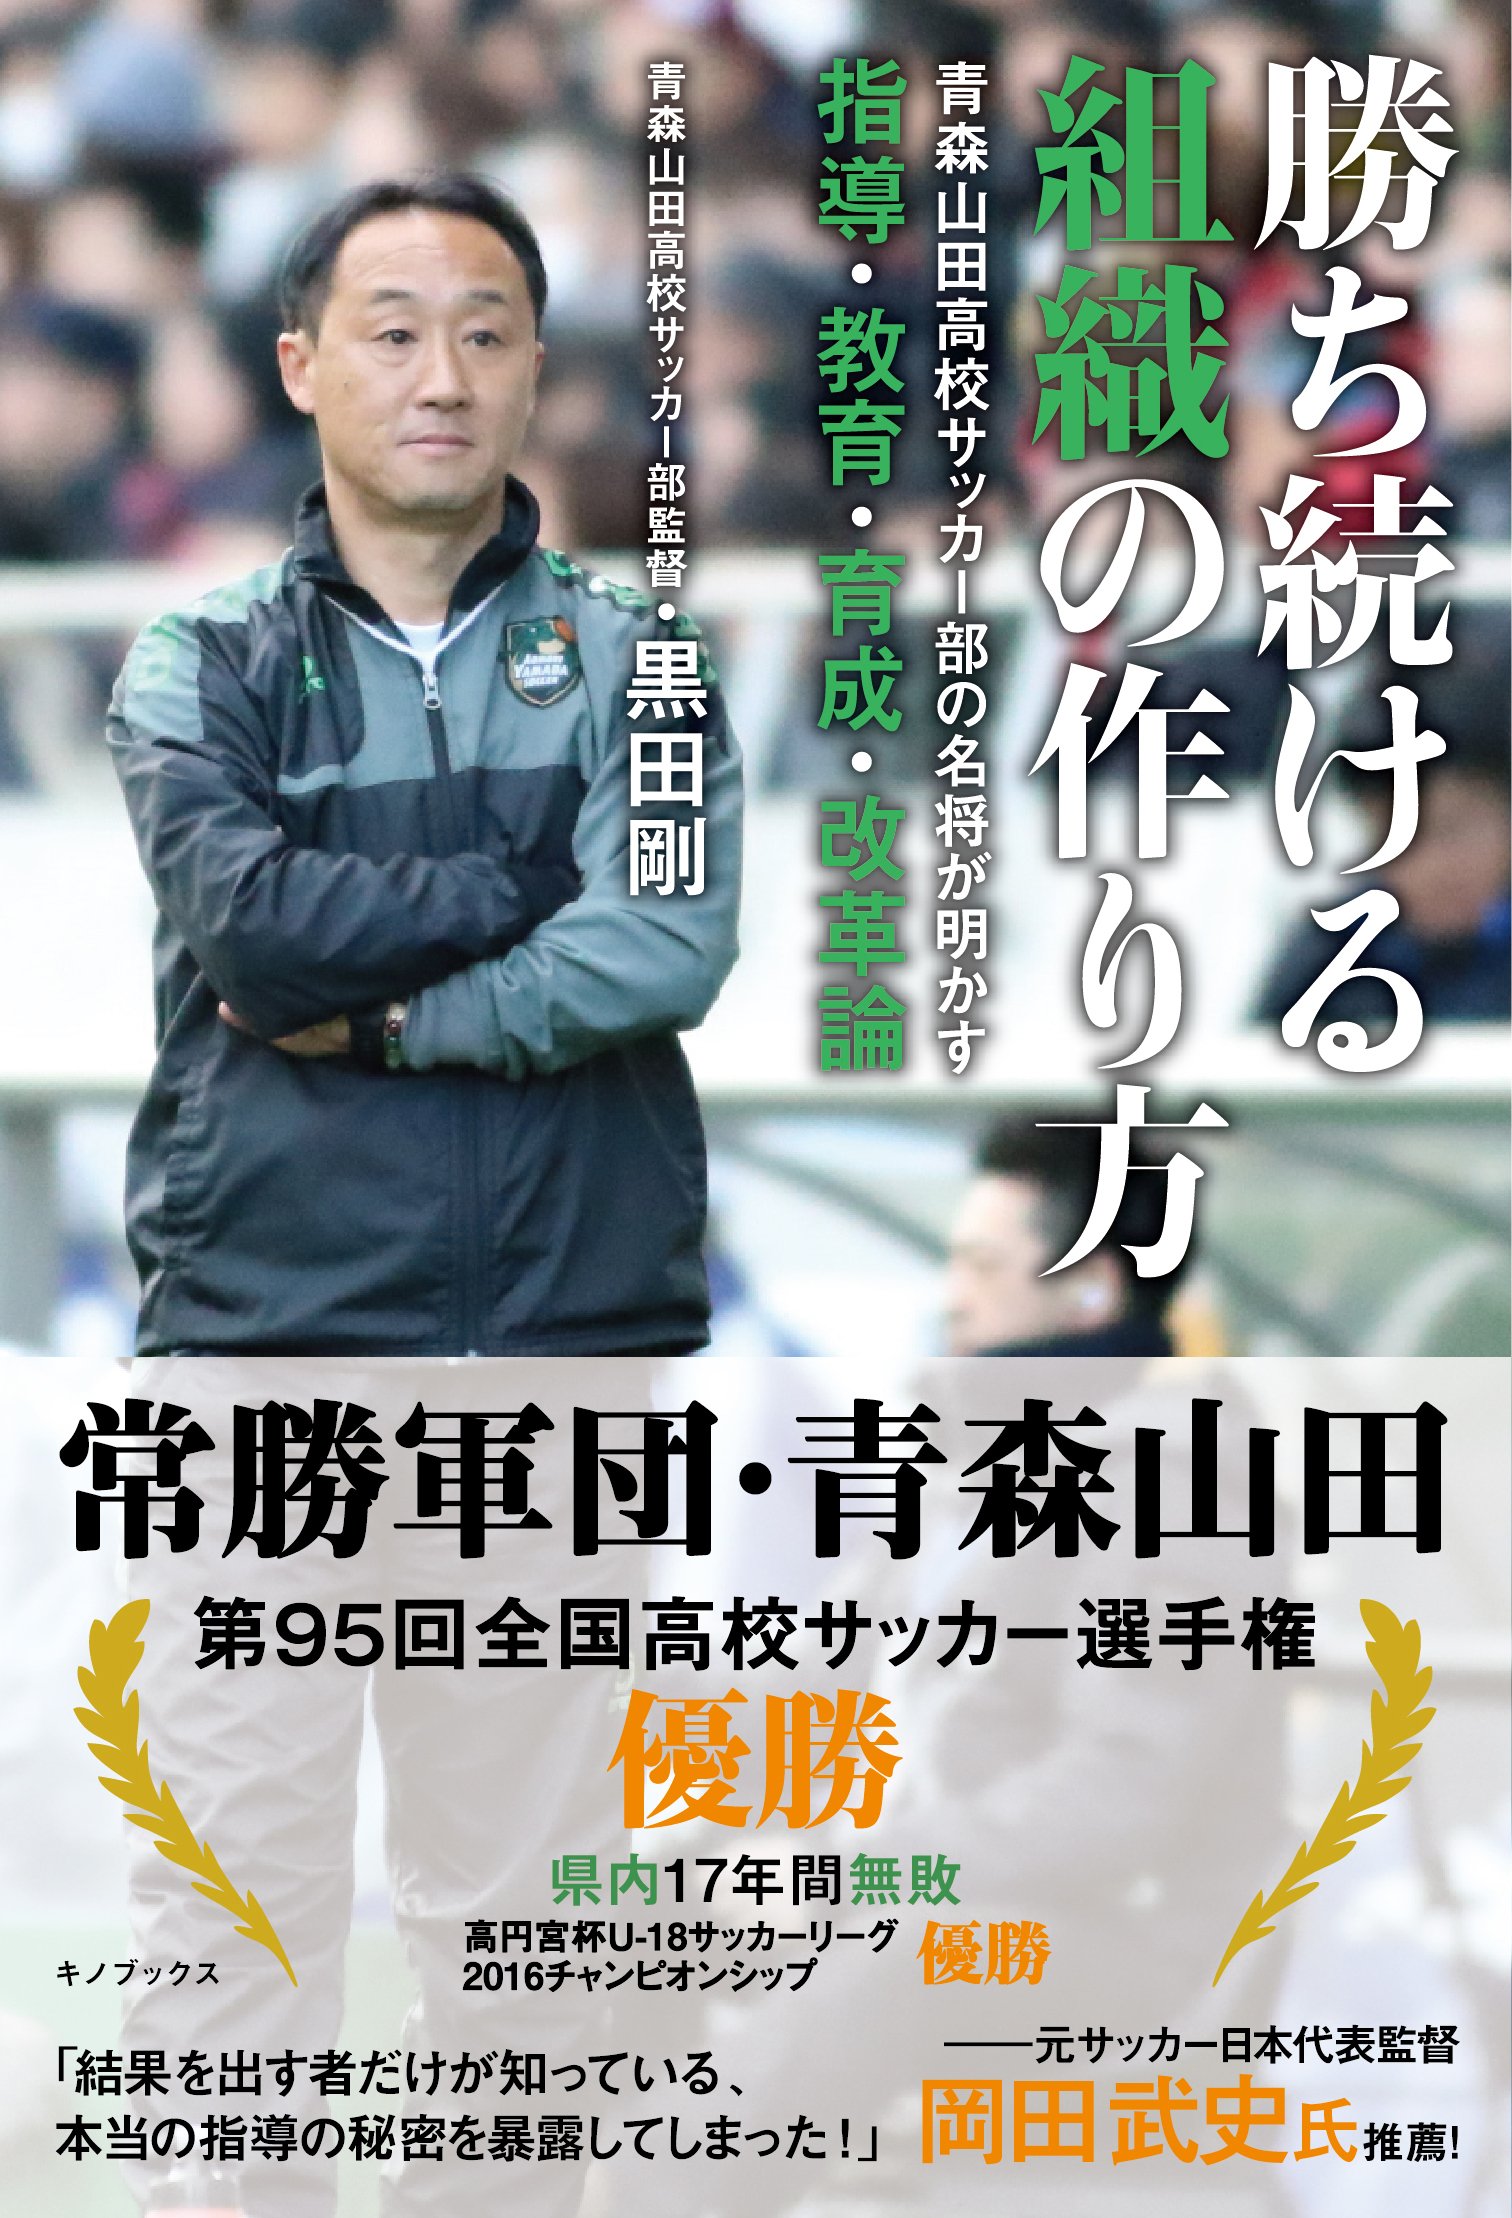 勝ち続ける組織の作り方 -青森山田高校サッカー部の名将が明かす指導・教育・育成・改革論 サカイク